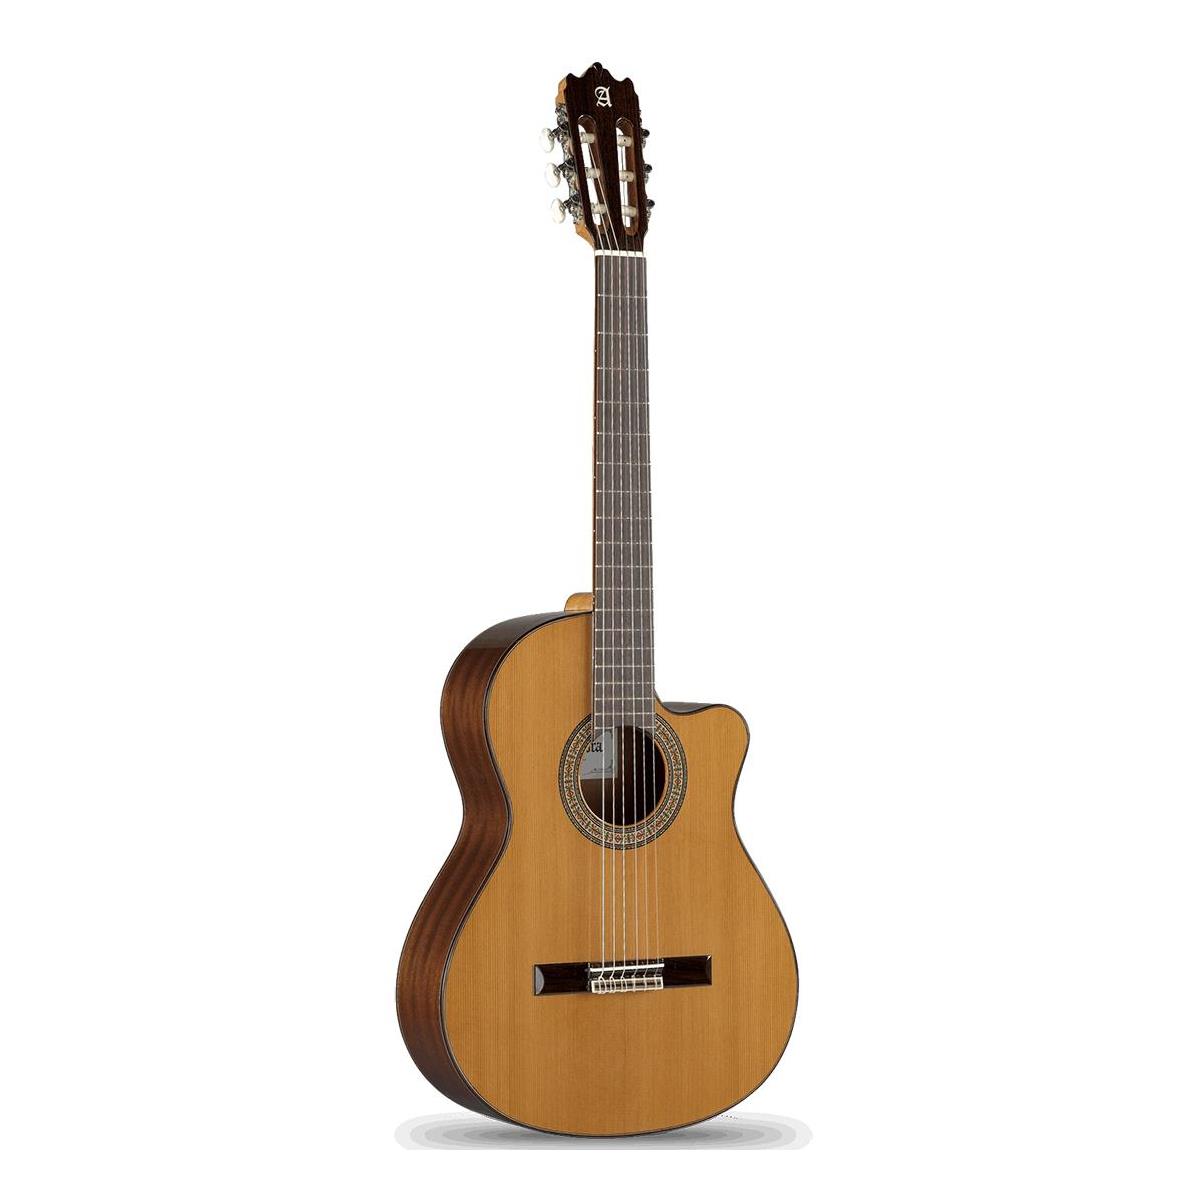 Image of Alhambra Guitars Cutaway Series 3C-CW Electric Guitar